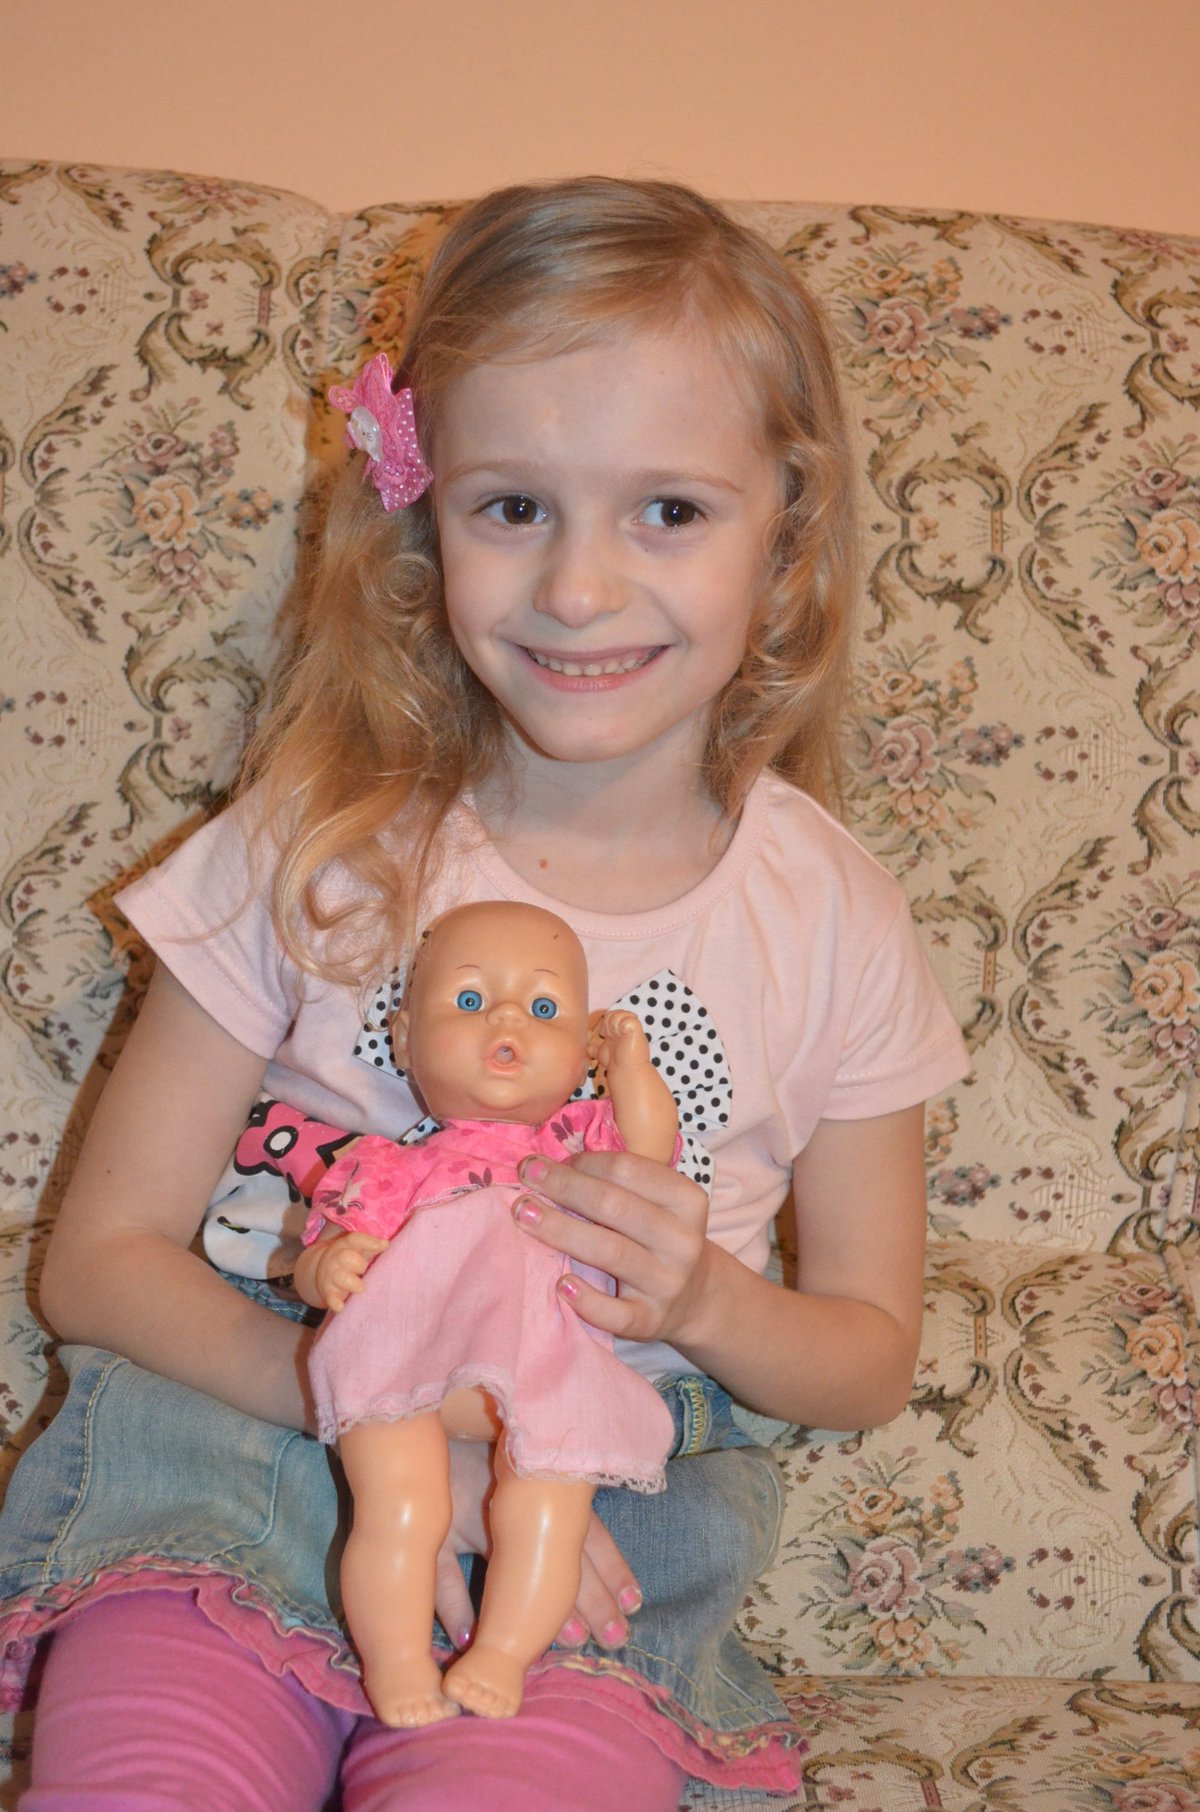 2014 Taková jsem byla, když jsem se narodila, ukázala Janinka svoji panenku.